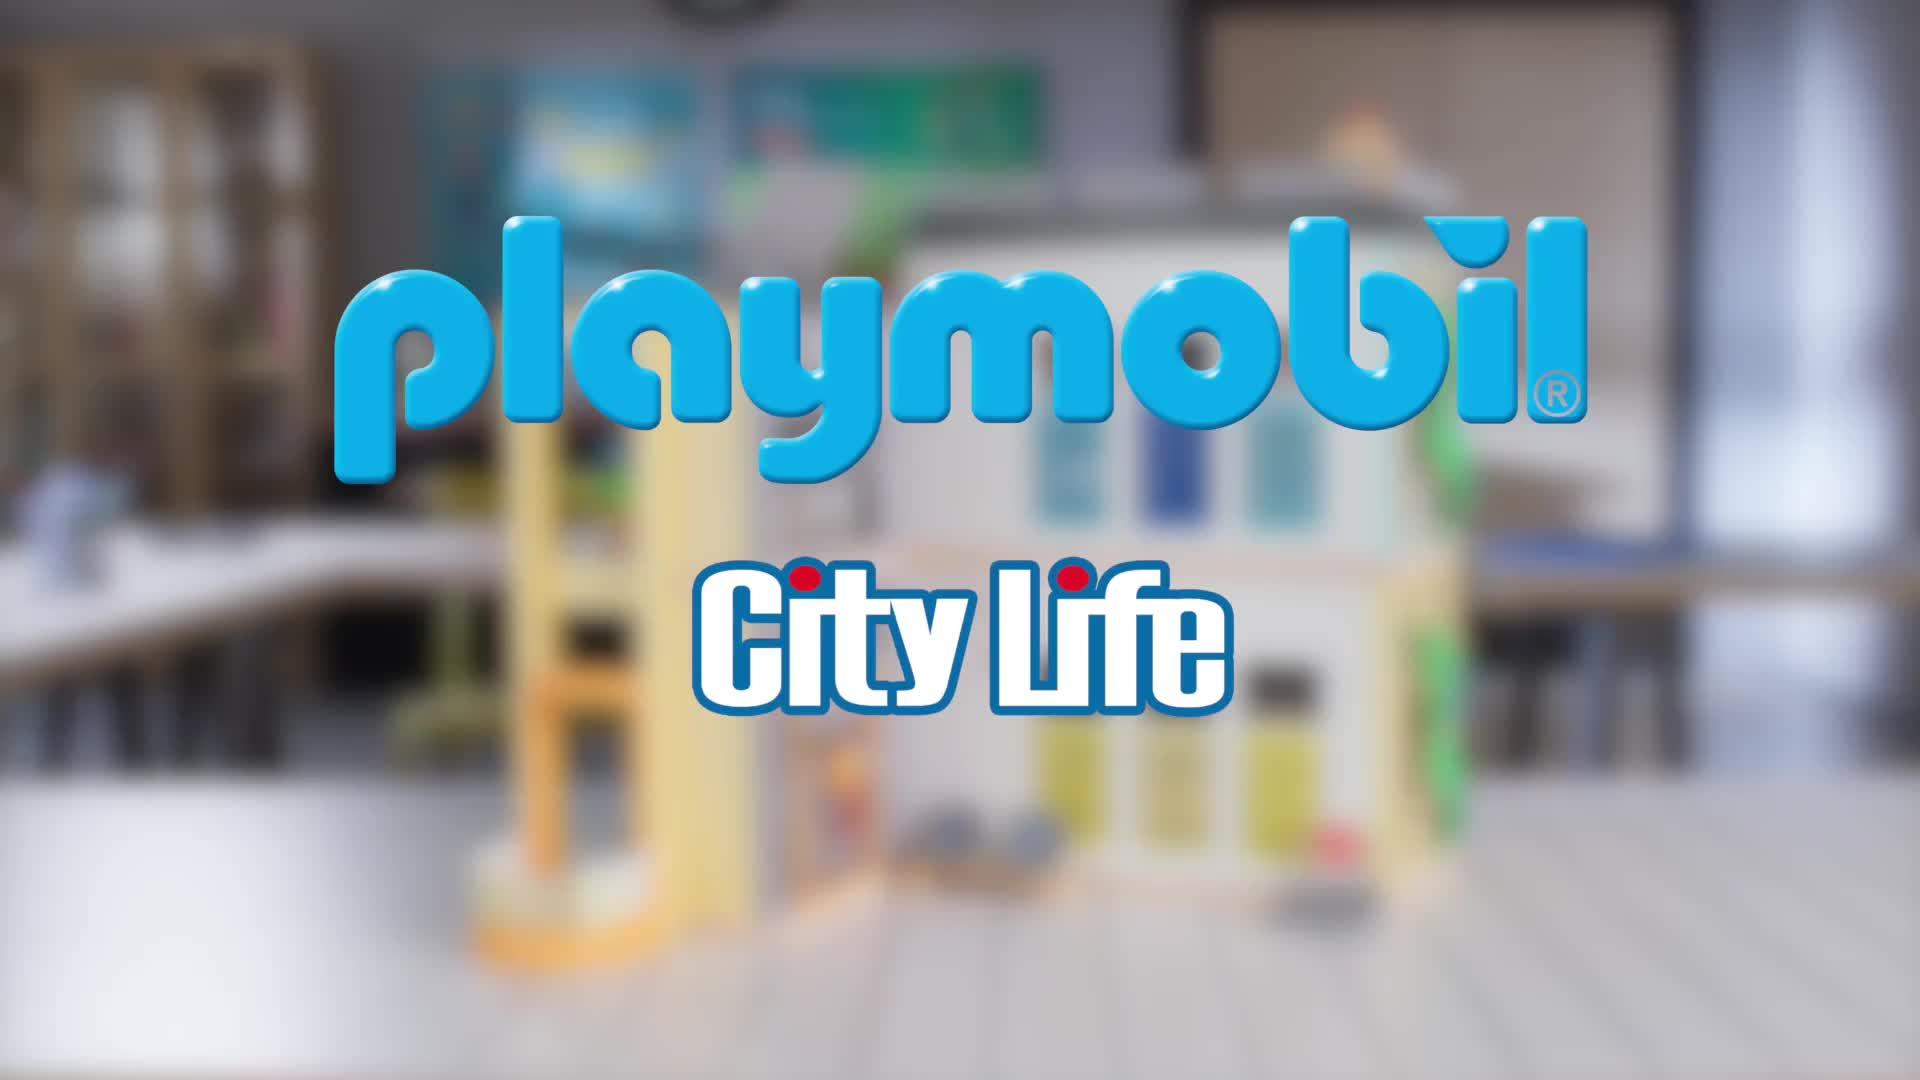 Les meilleurs prix aujourd'hui pour Playmobil® City Life Etage